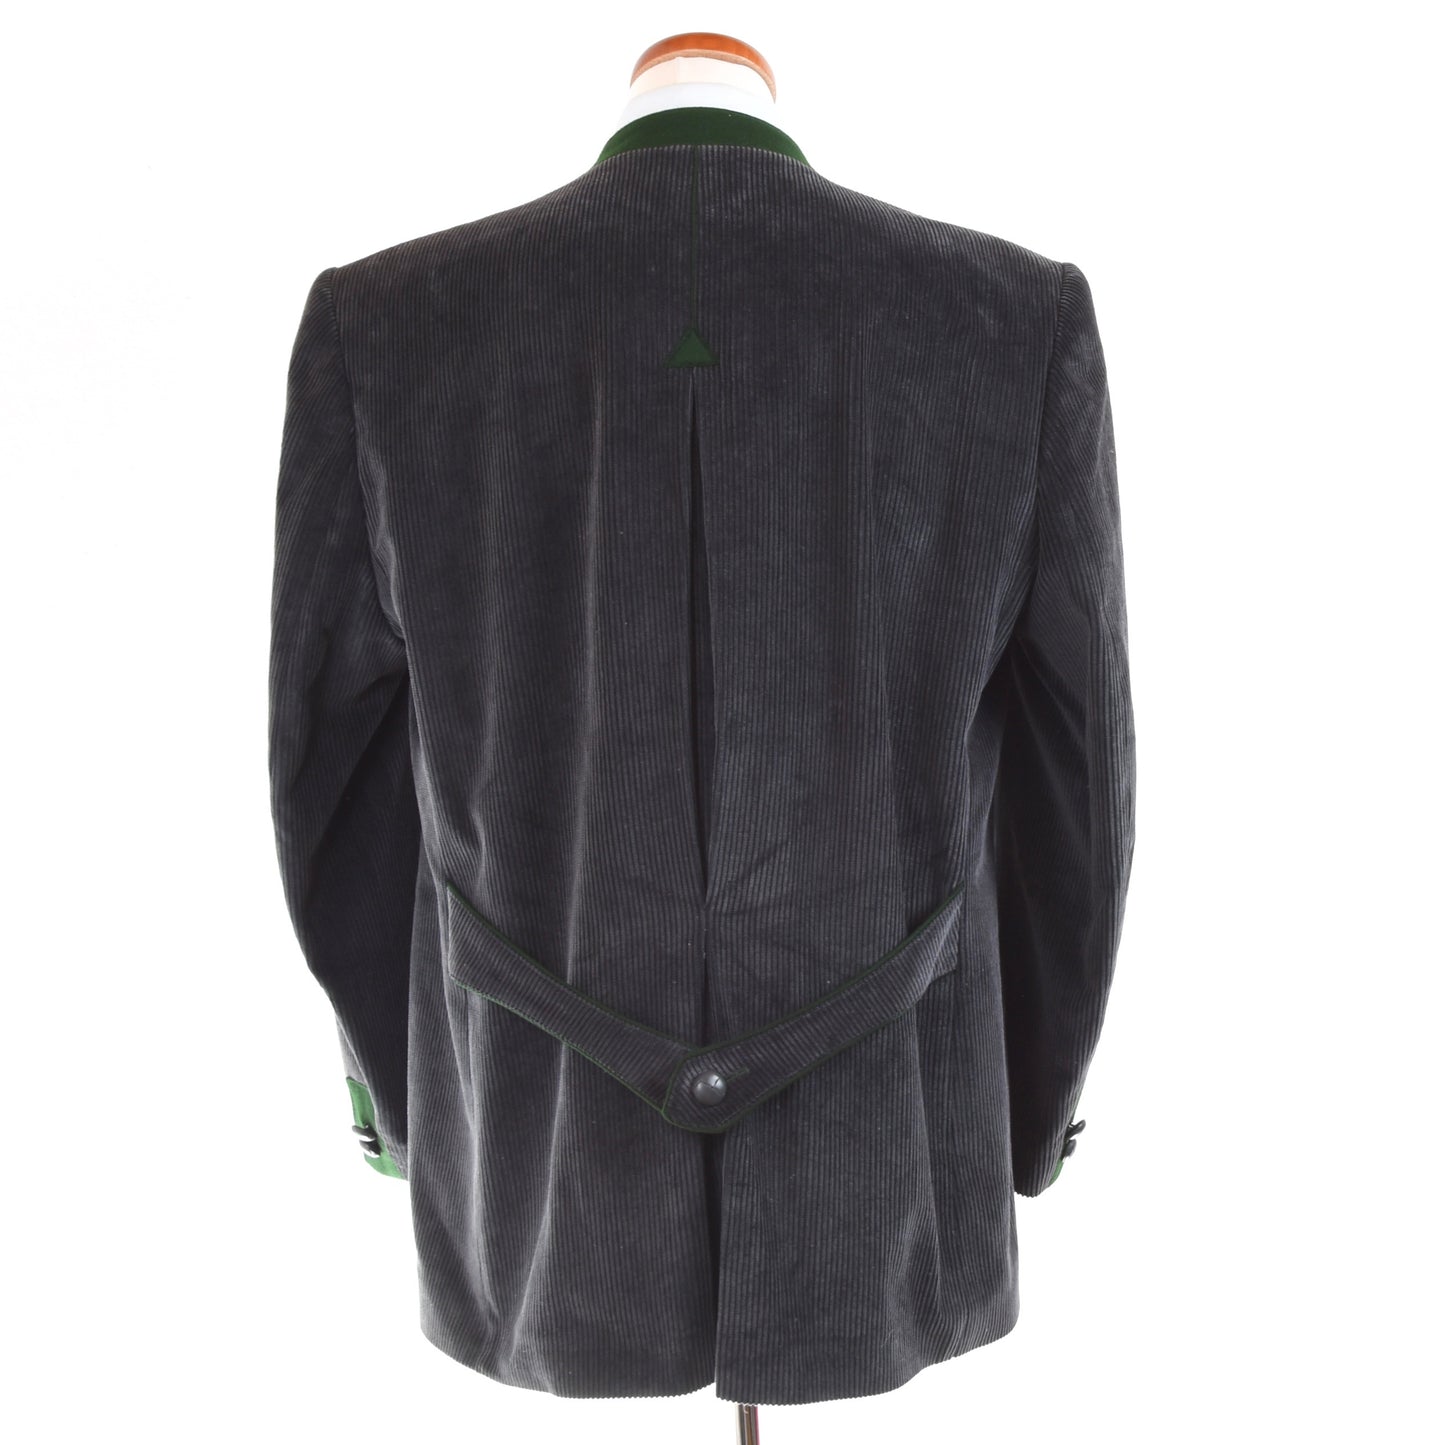 Loden Fürst Corduroy Janker/Jacket Size 56 - Grey